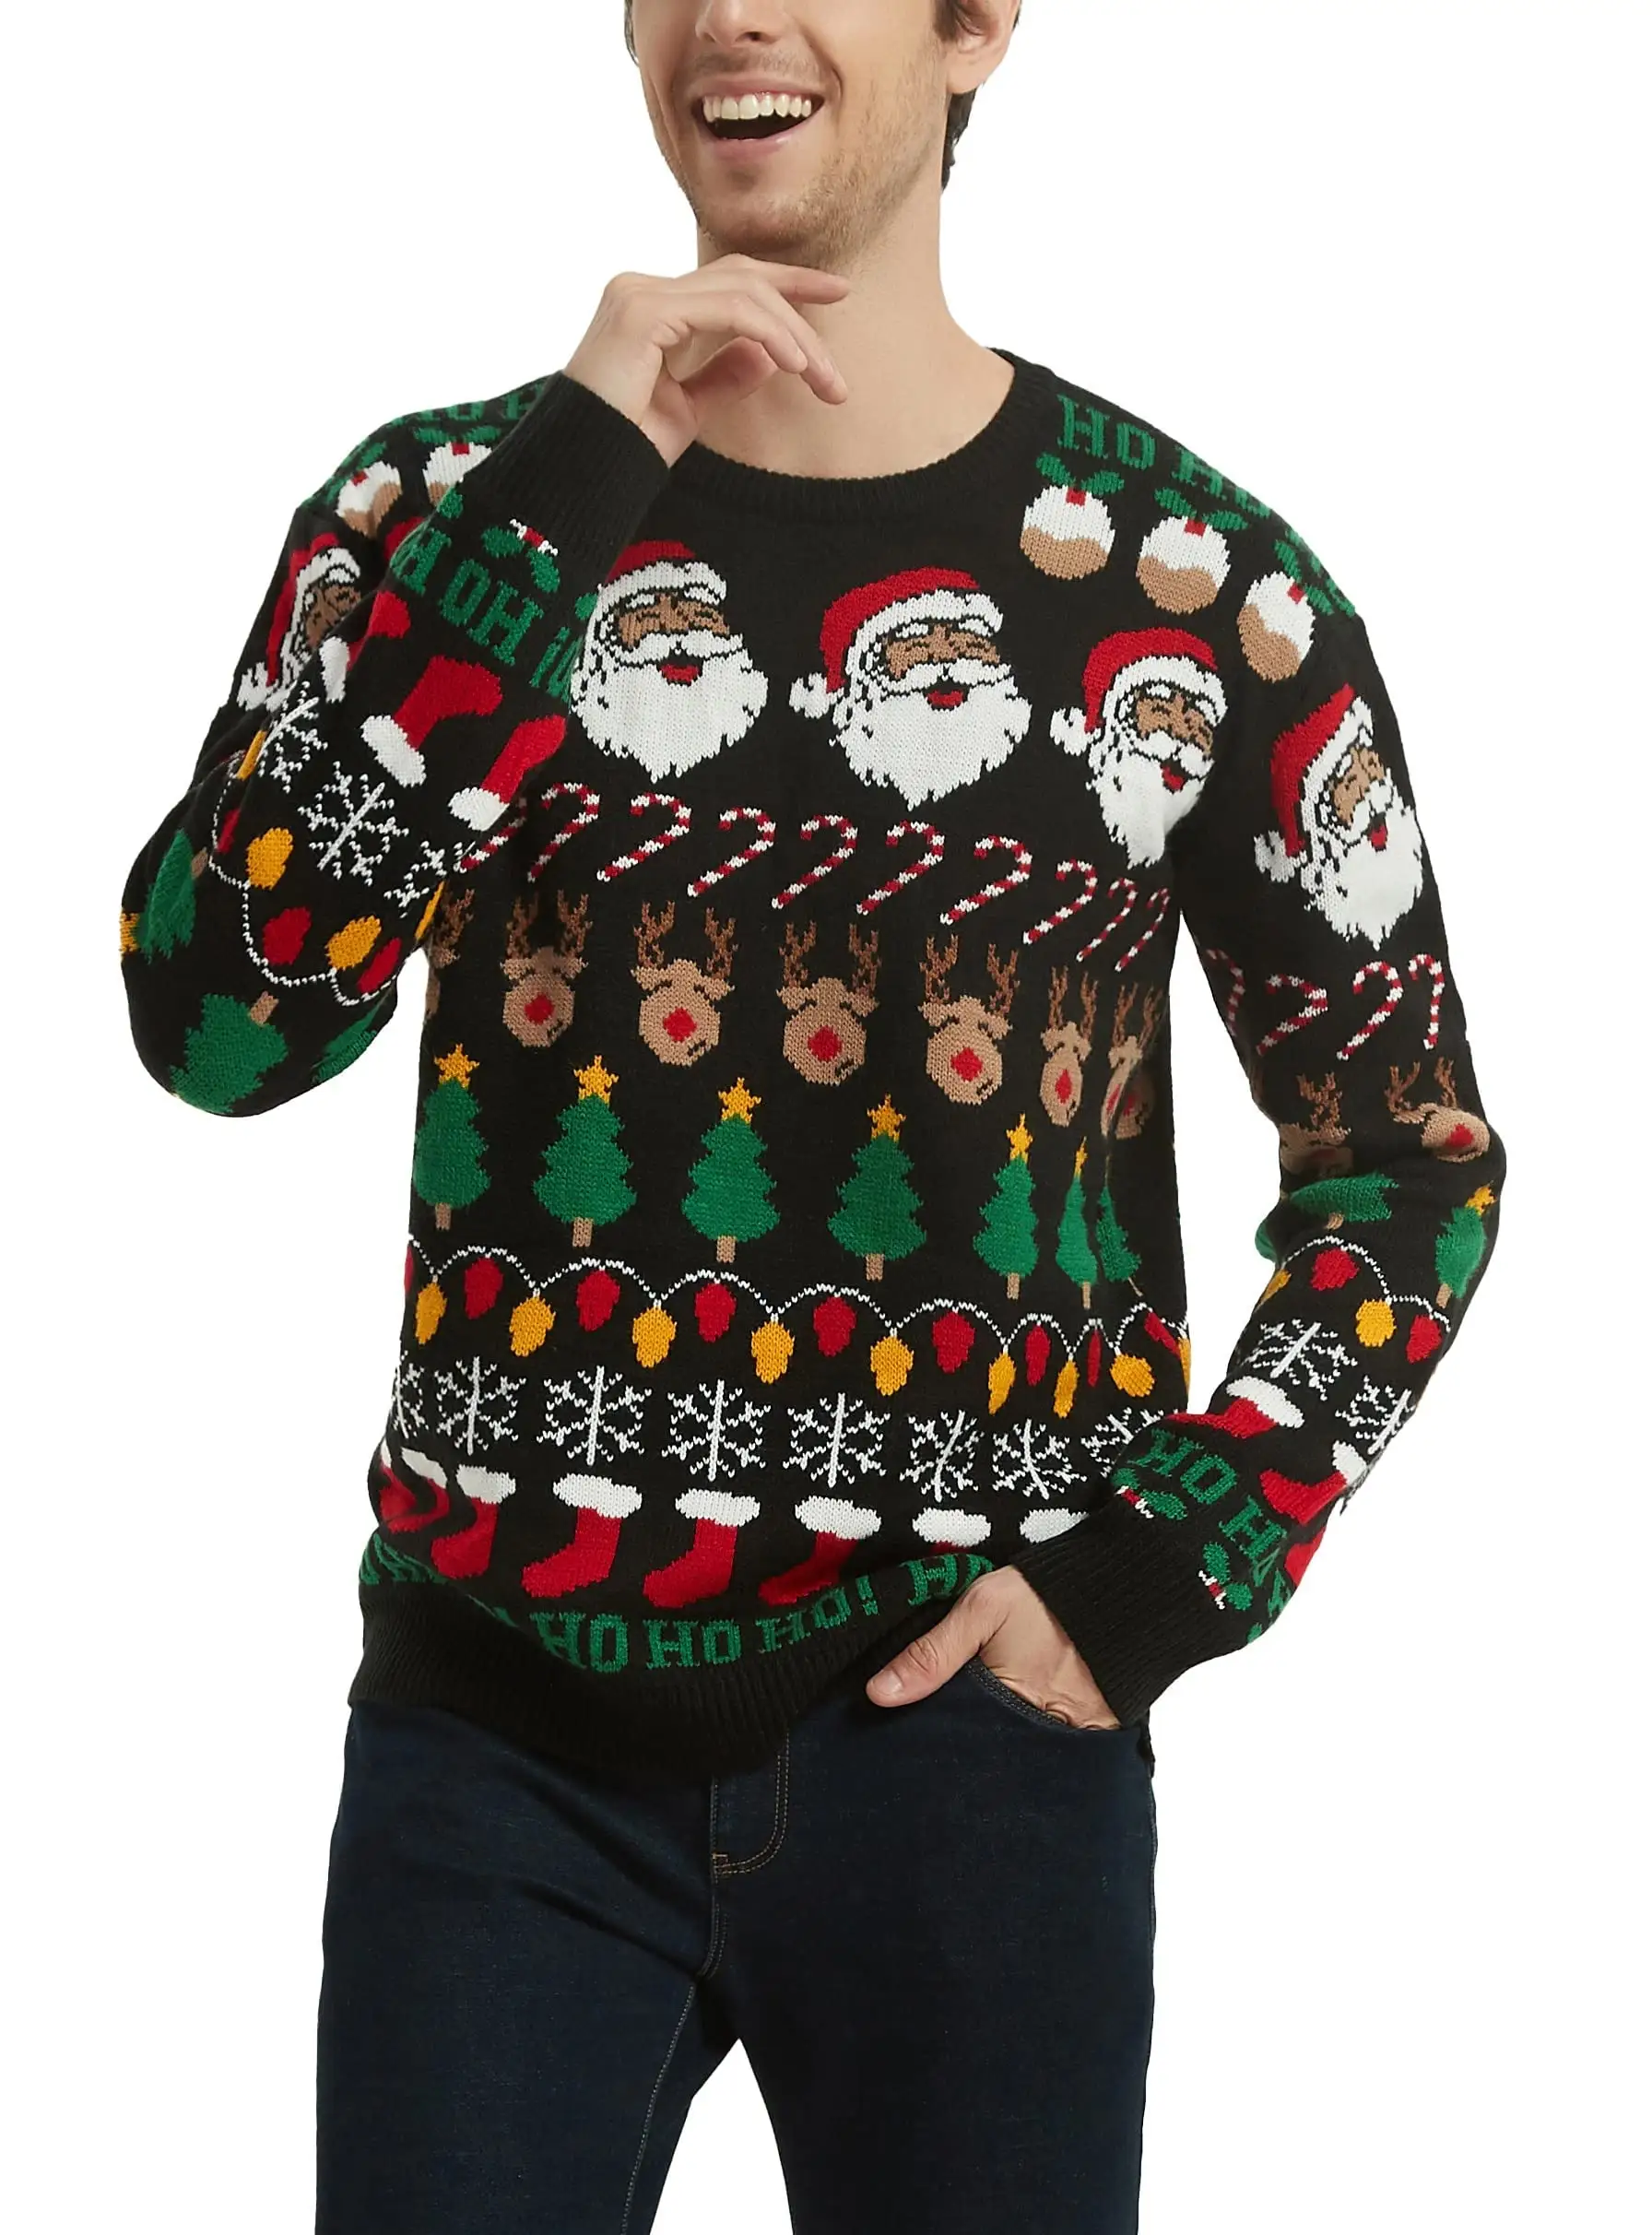 Benutzer definiertes Logo Großhändler Hässlicher Pullover mit Rundhals ausschnitt aus reiner Baumwolle Unisex Gestrickter Weihnachts pullover